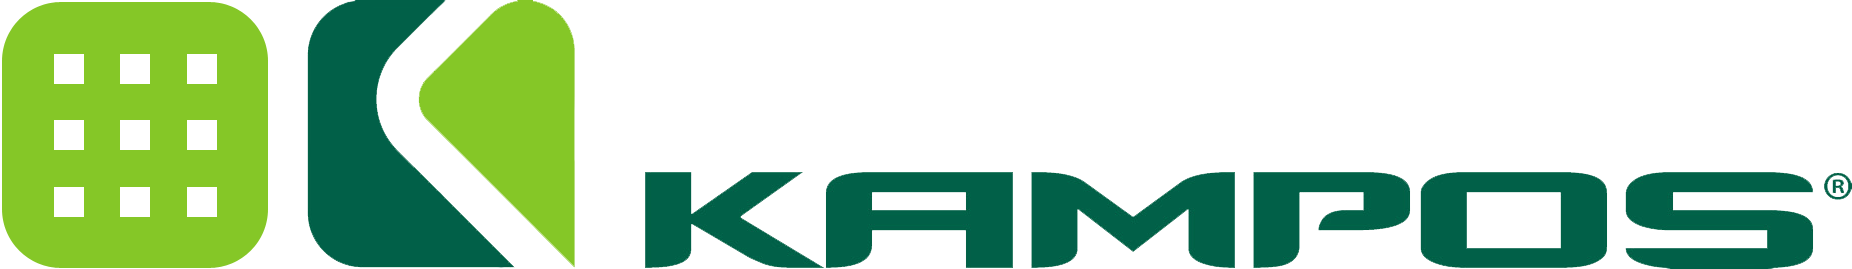 logo-led_1852